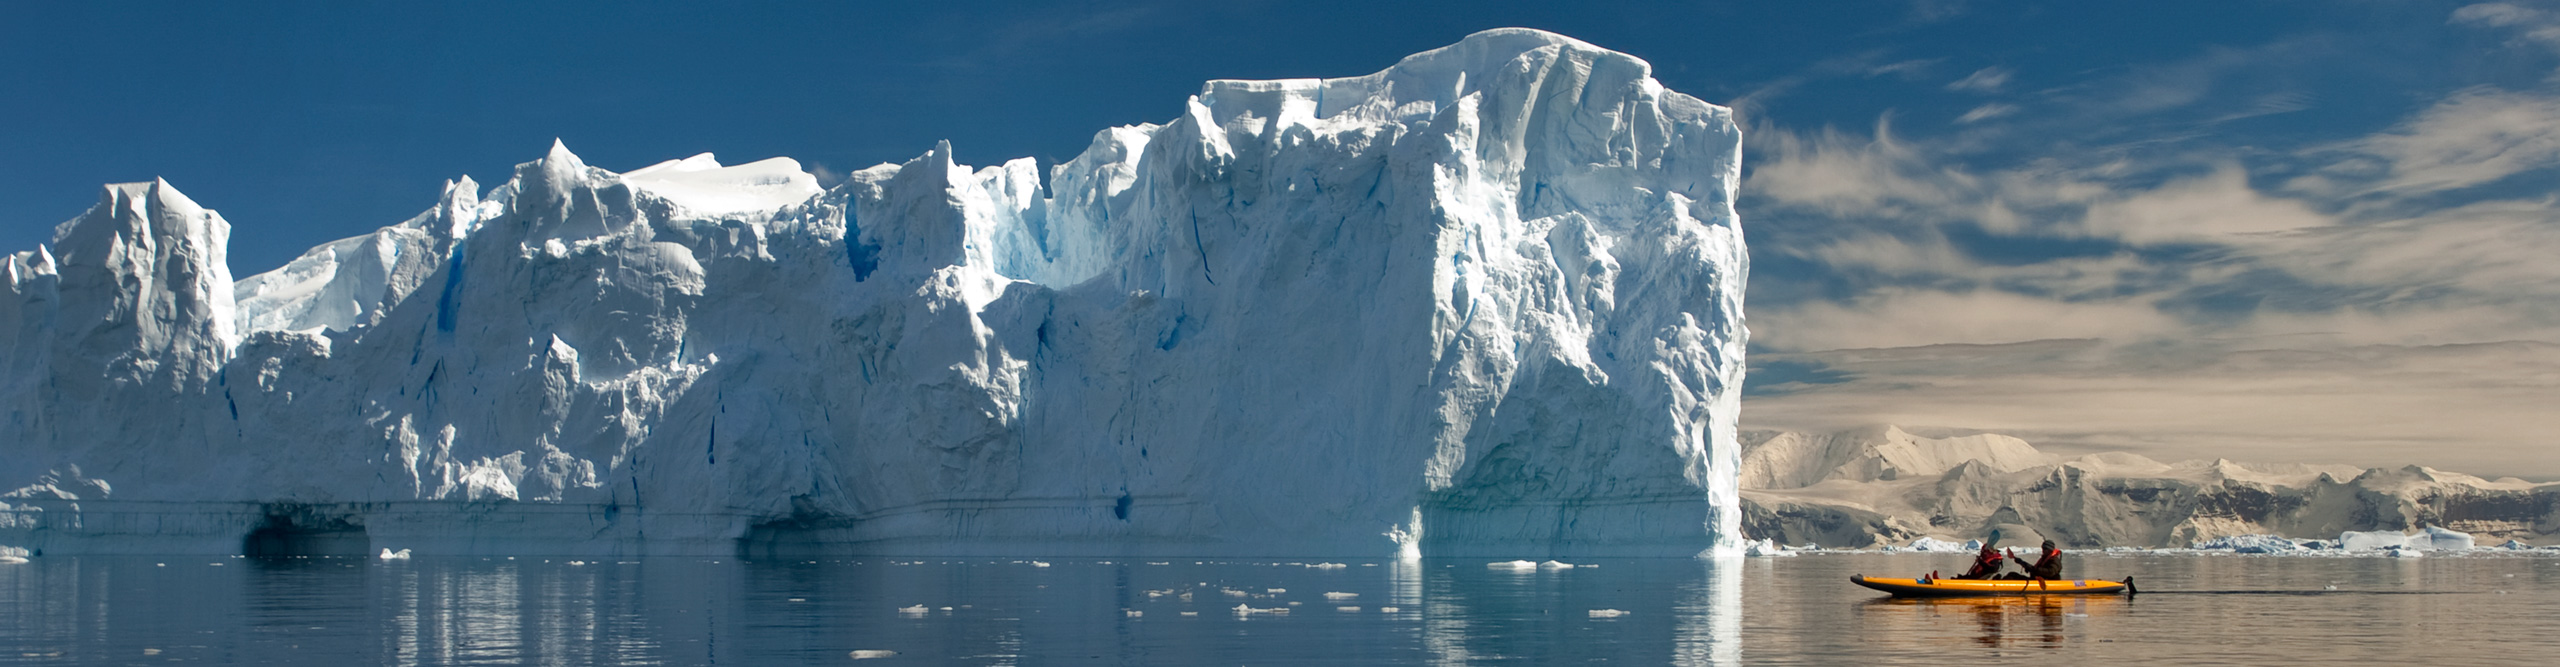 Kayaker in Neko Harbour on the Antarctic peninsula, in front of icebergs Neko is part of Andvord Bay